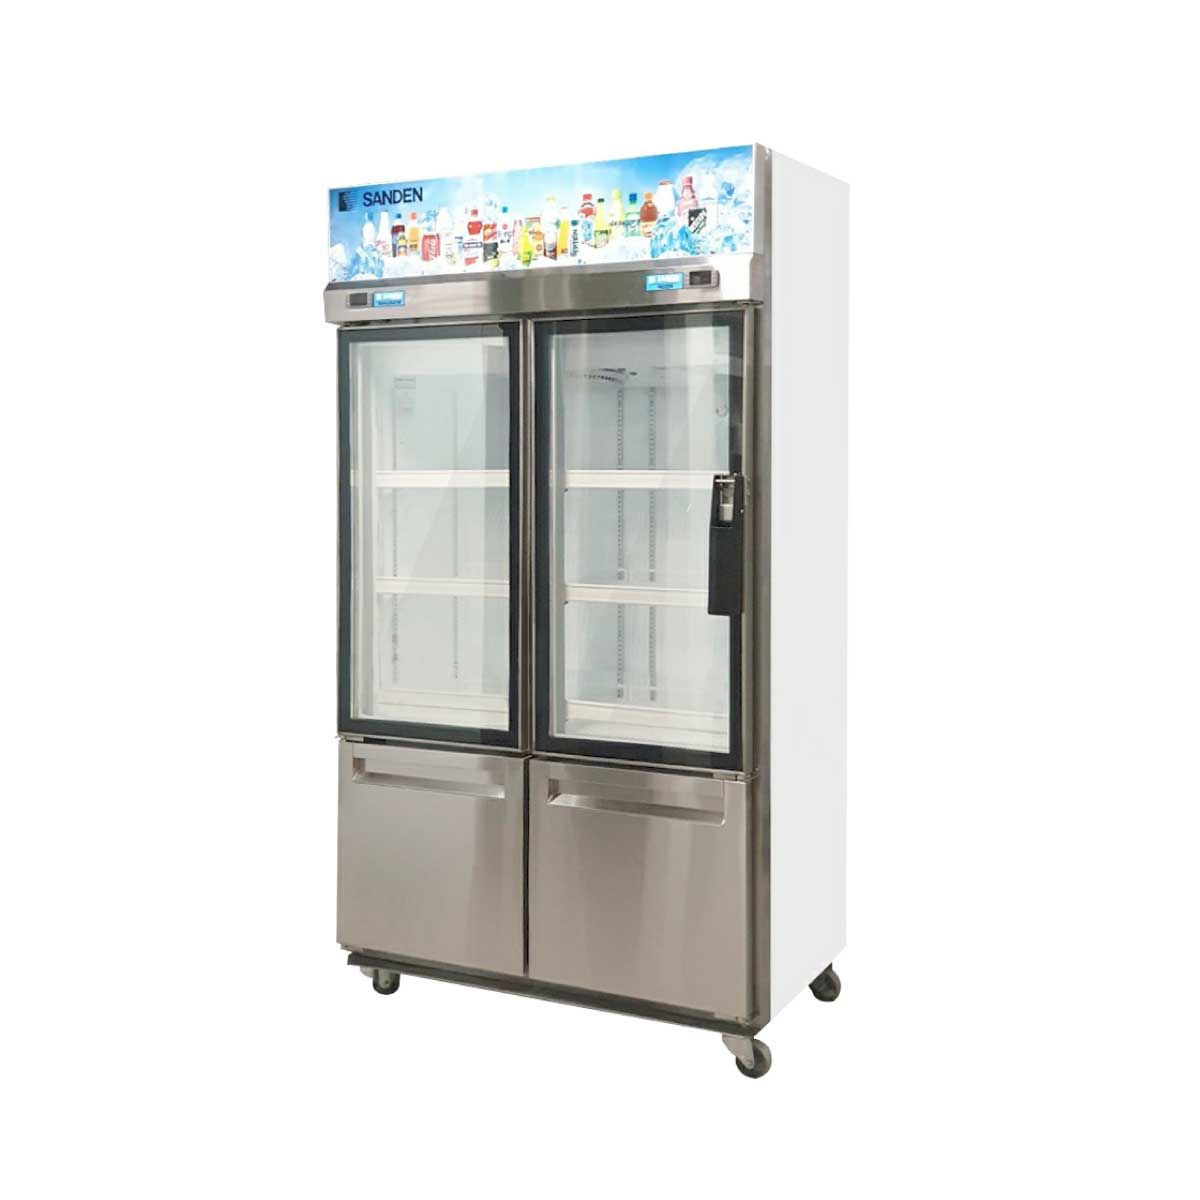 SANDEN ตู้แช่เครื่องดื่ม 2 ประตูแช่เย็นแช่แข็ง รุ่น YDM-1005 ความจุ 24.7 คิว